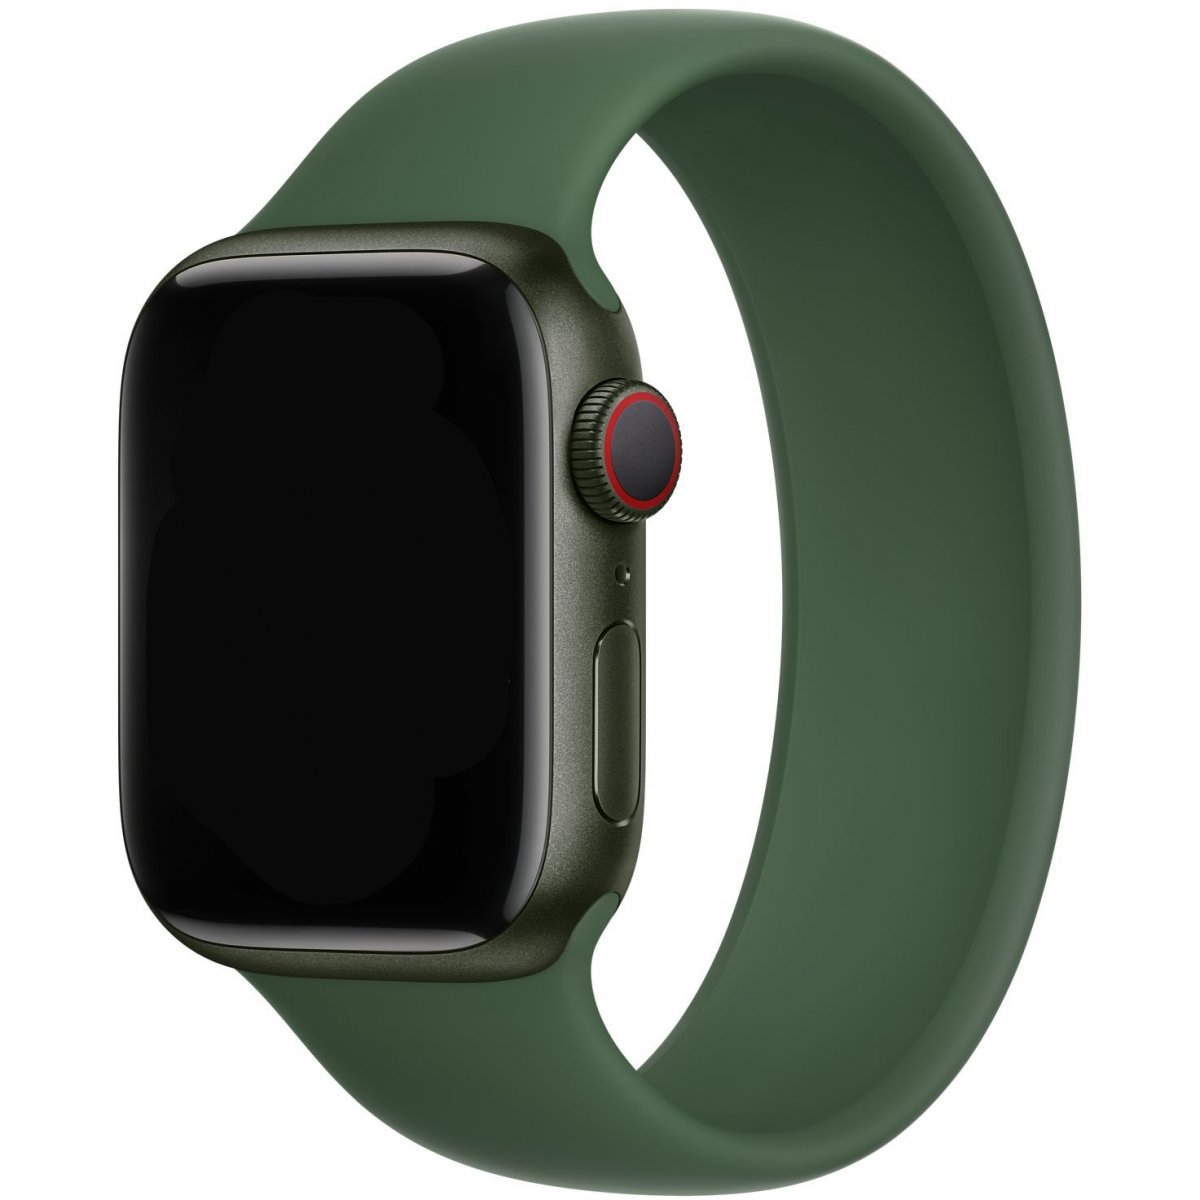 Řemínek iMore Solo Loop Apple Watch Series 1/2/3 38mm - Jetelově zelená (S)